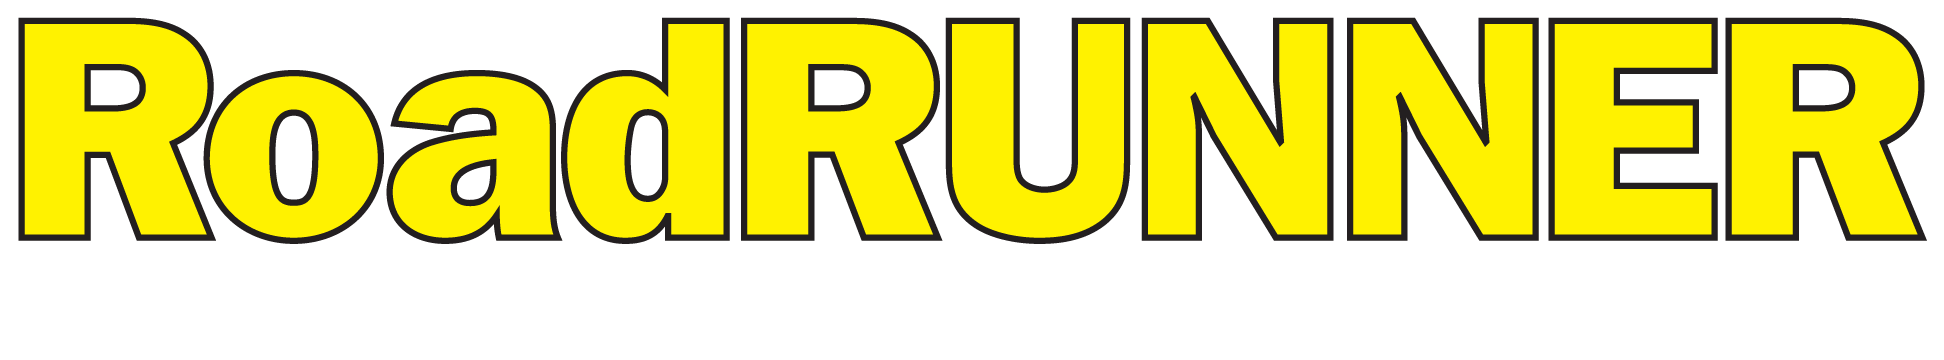 Roadrunner Logos